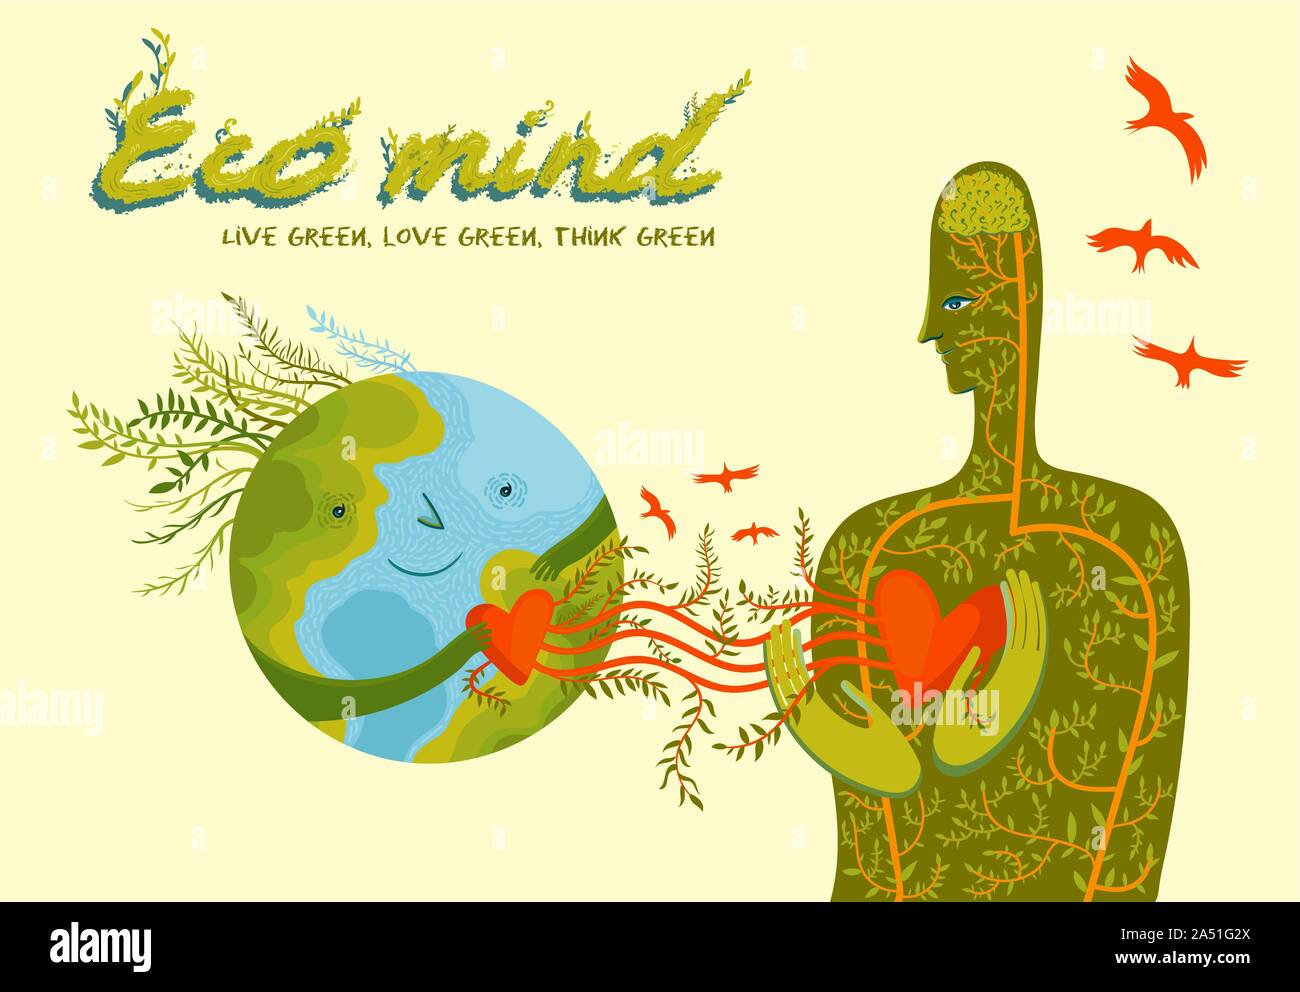 Vivere Verde, amore verde, pensare verde. Concettuale illustrazione vettoriale sull ambiente ed ecologico della mente umana. Uomo in amore con il pianeta Terra. Illustrazione Vettoriale